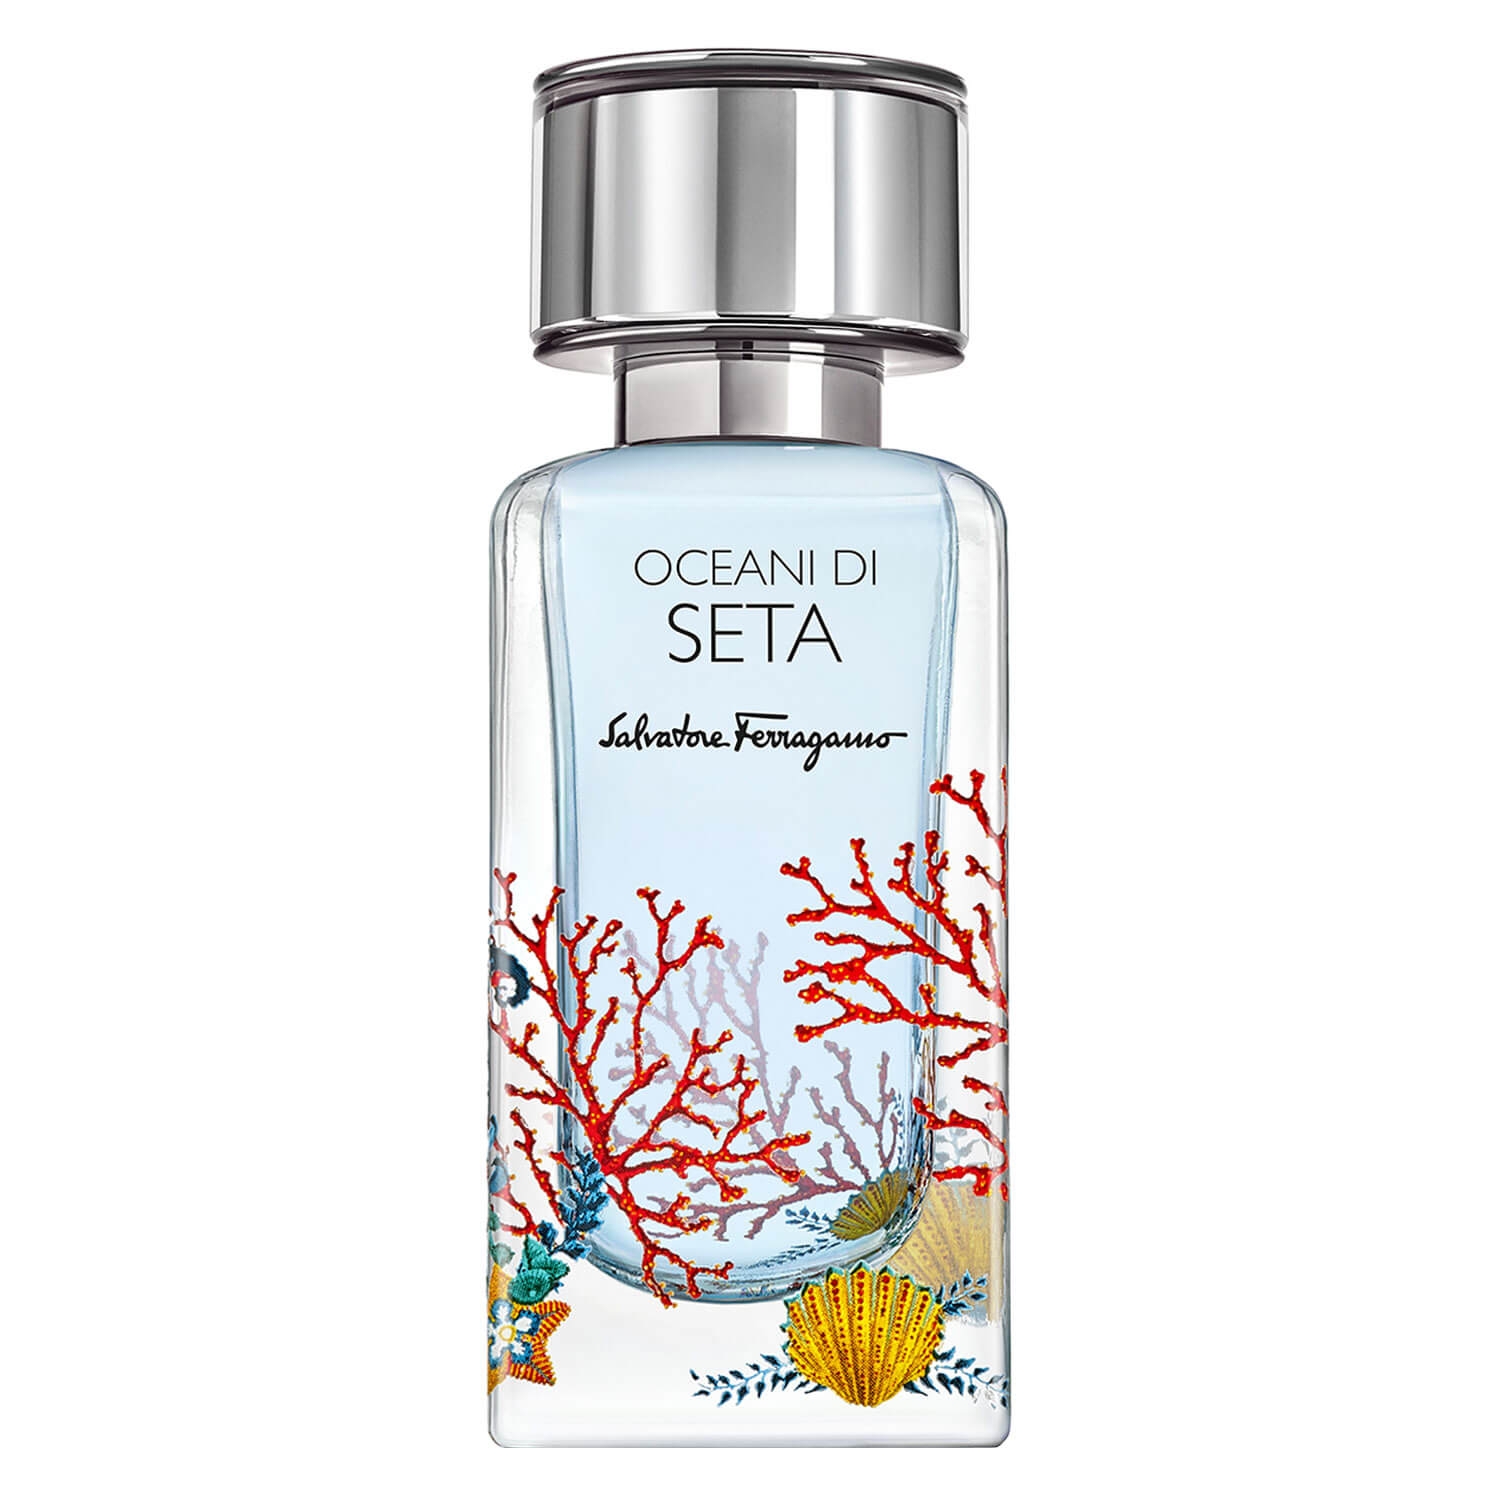 Produktbild von Salvatore Ferragamo - Oceani di Seta Eau de Parfum